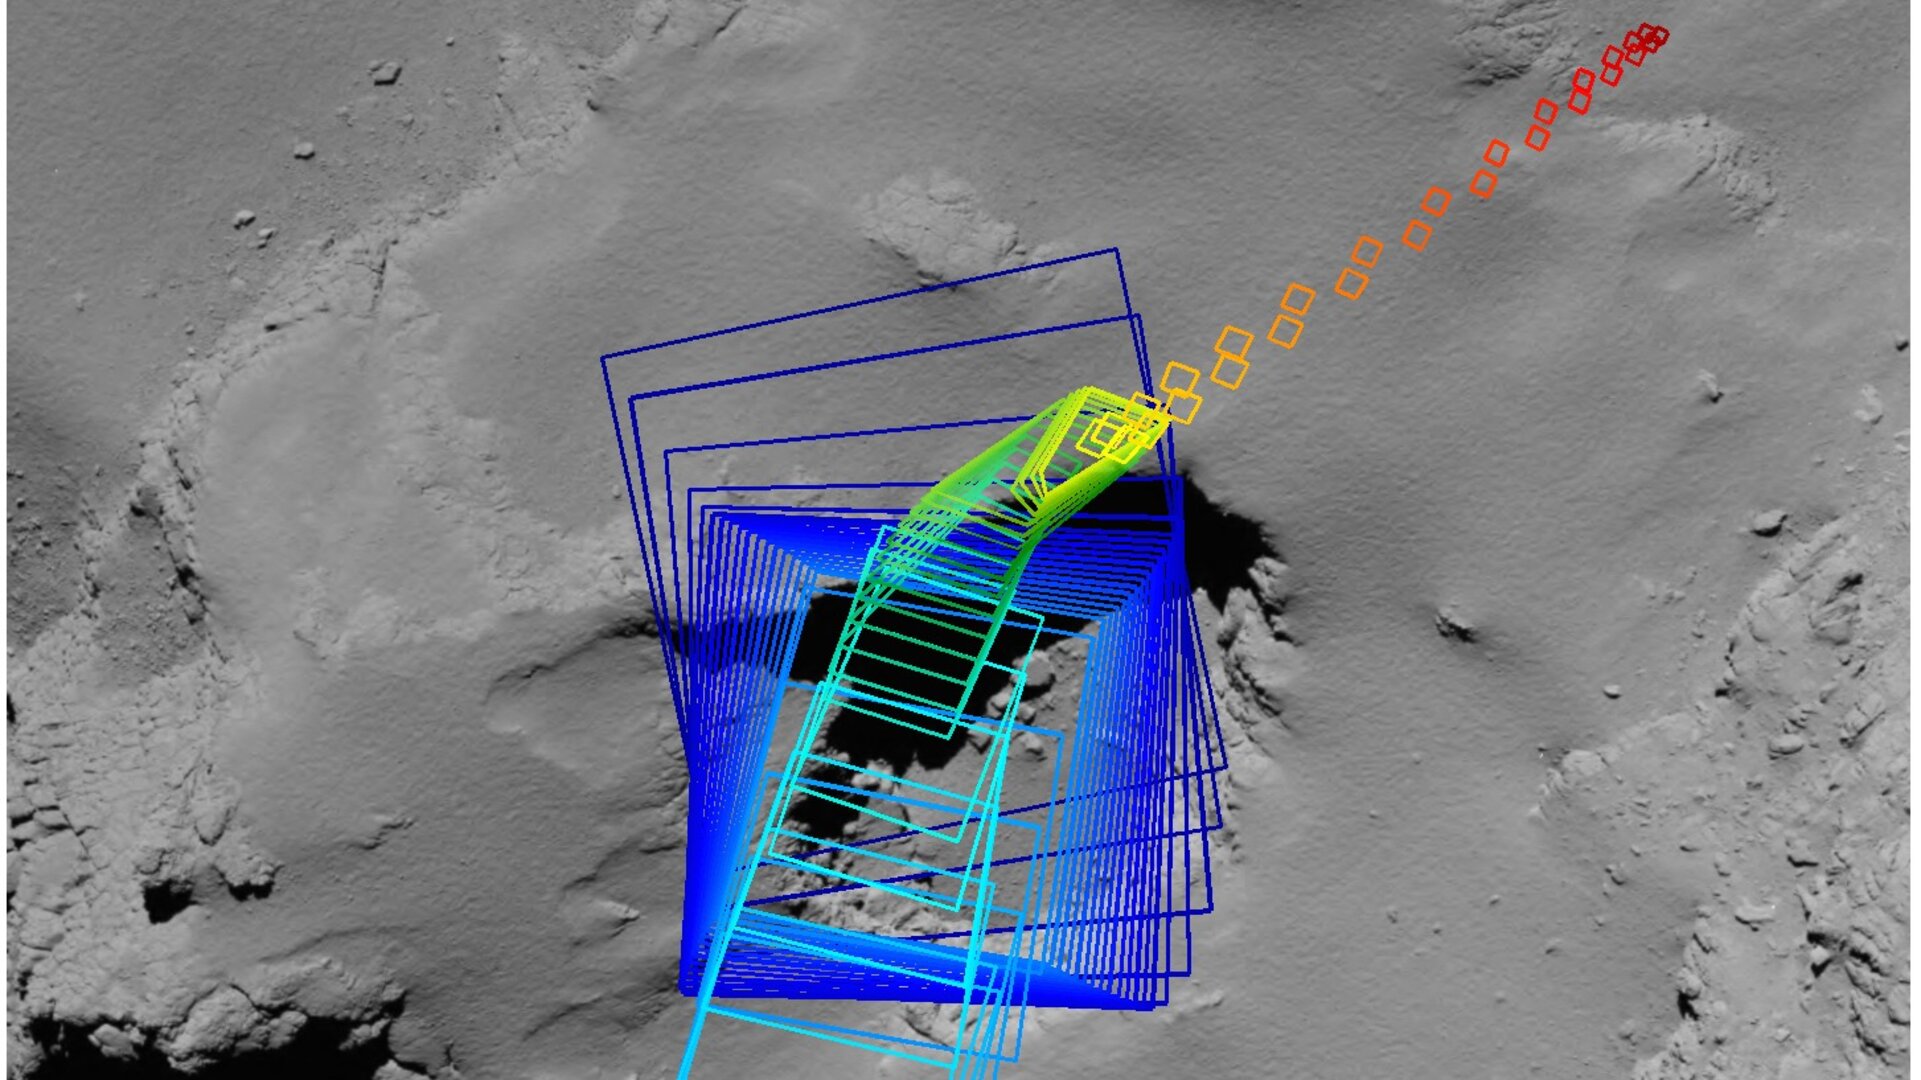 Rosetta’s final imaging sequence